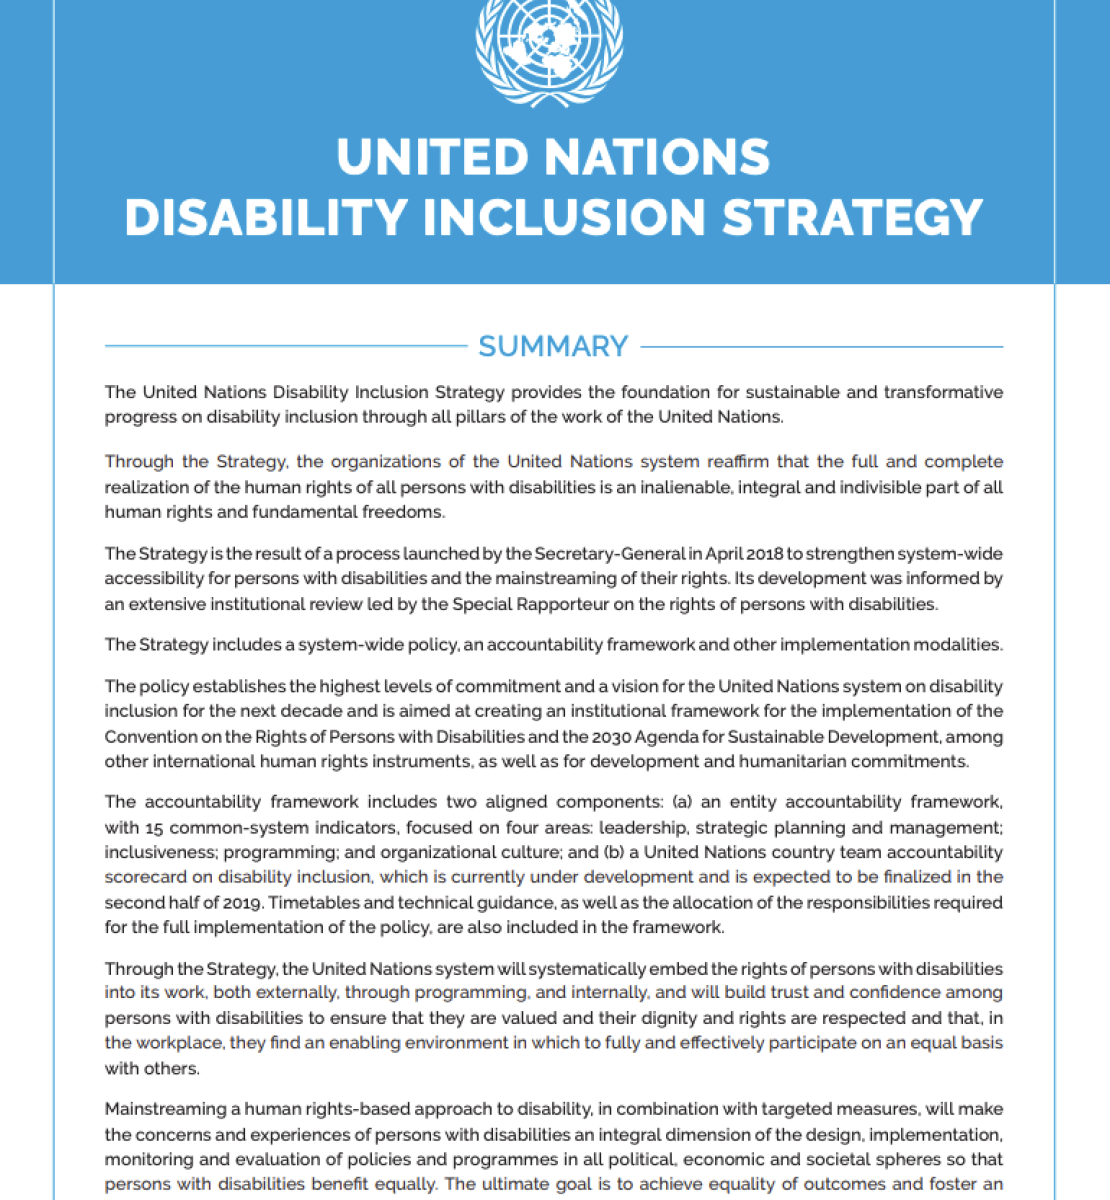 الصفحة الأولى من دليل إدماج منظور الإعاقة مع شعار الأمم المتحدة في الأعلى.